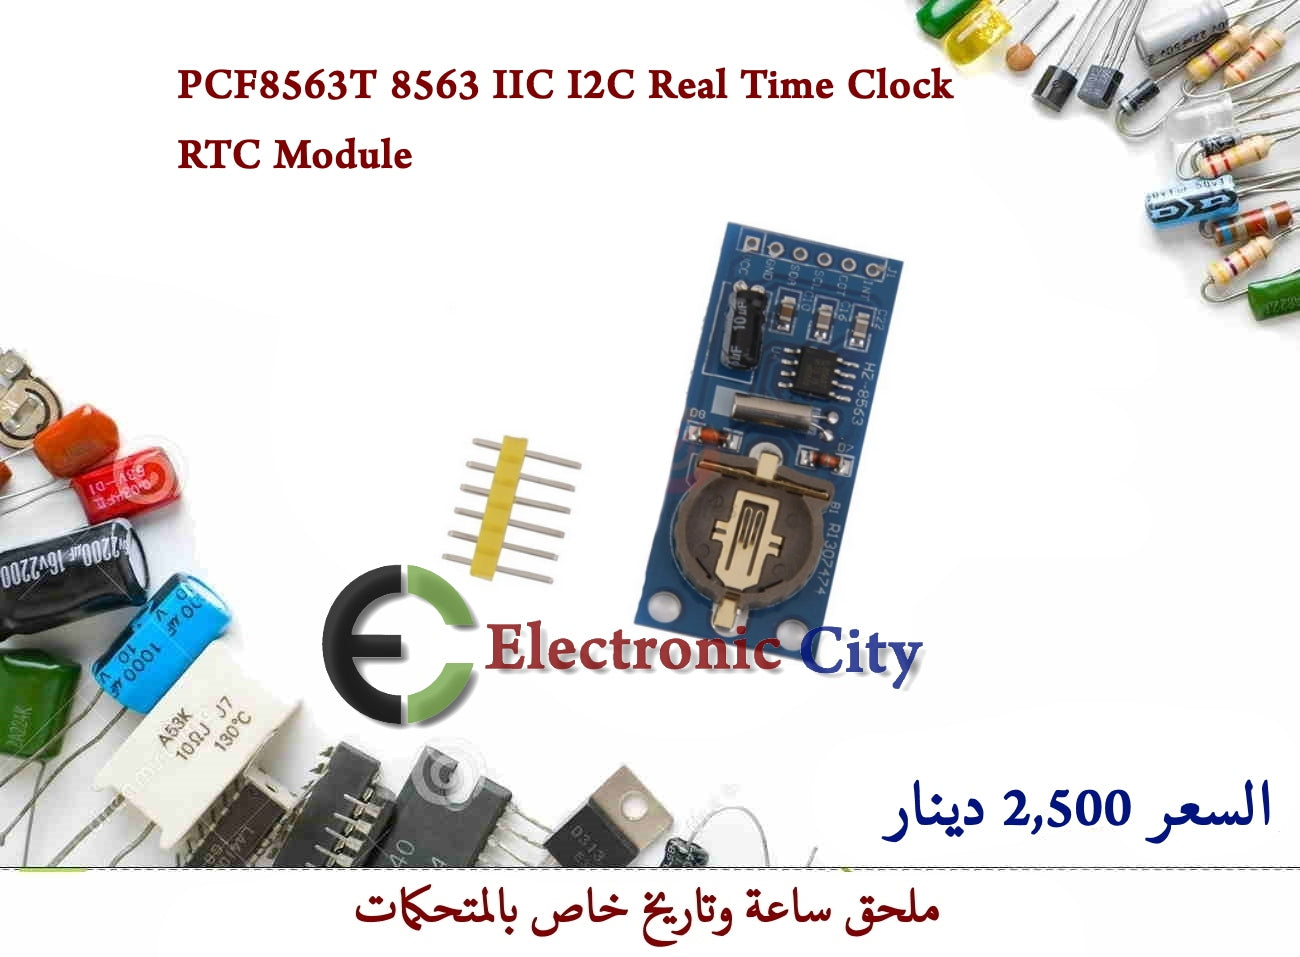 PCF8563T 8563 IIC I2C Real Time Clock RTC Module